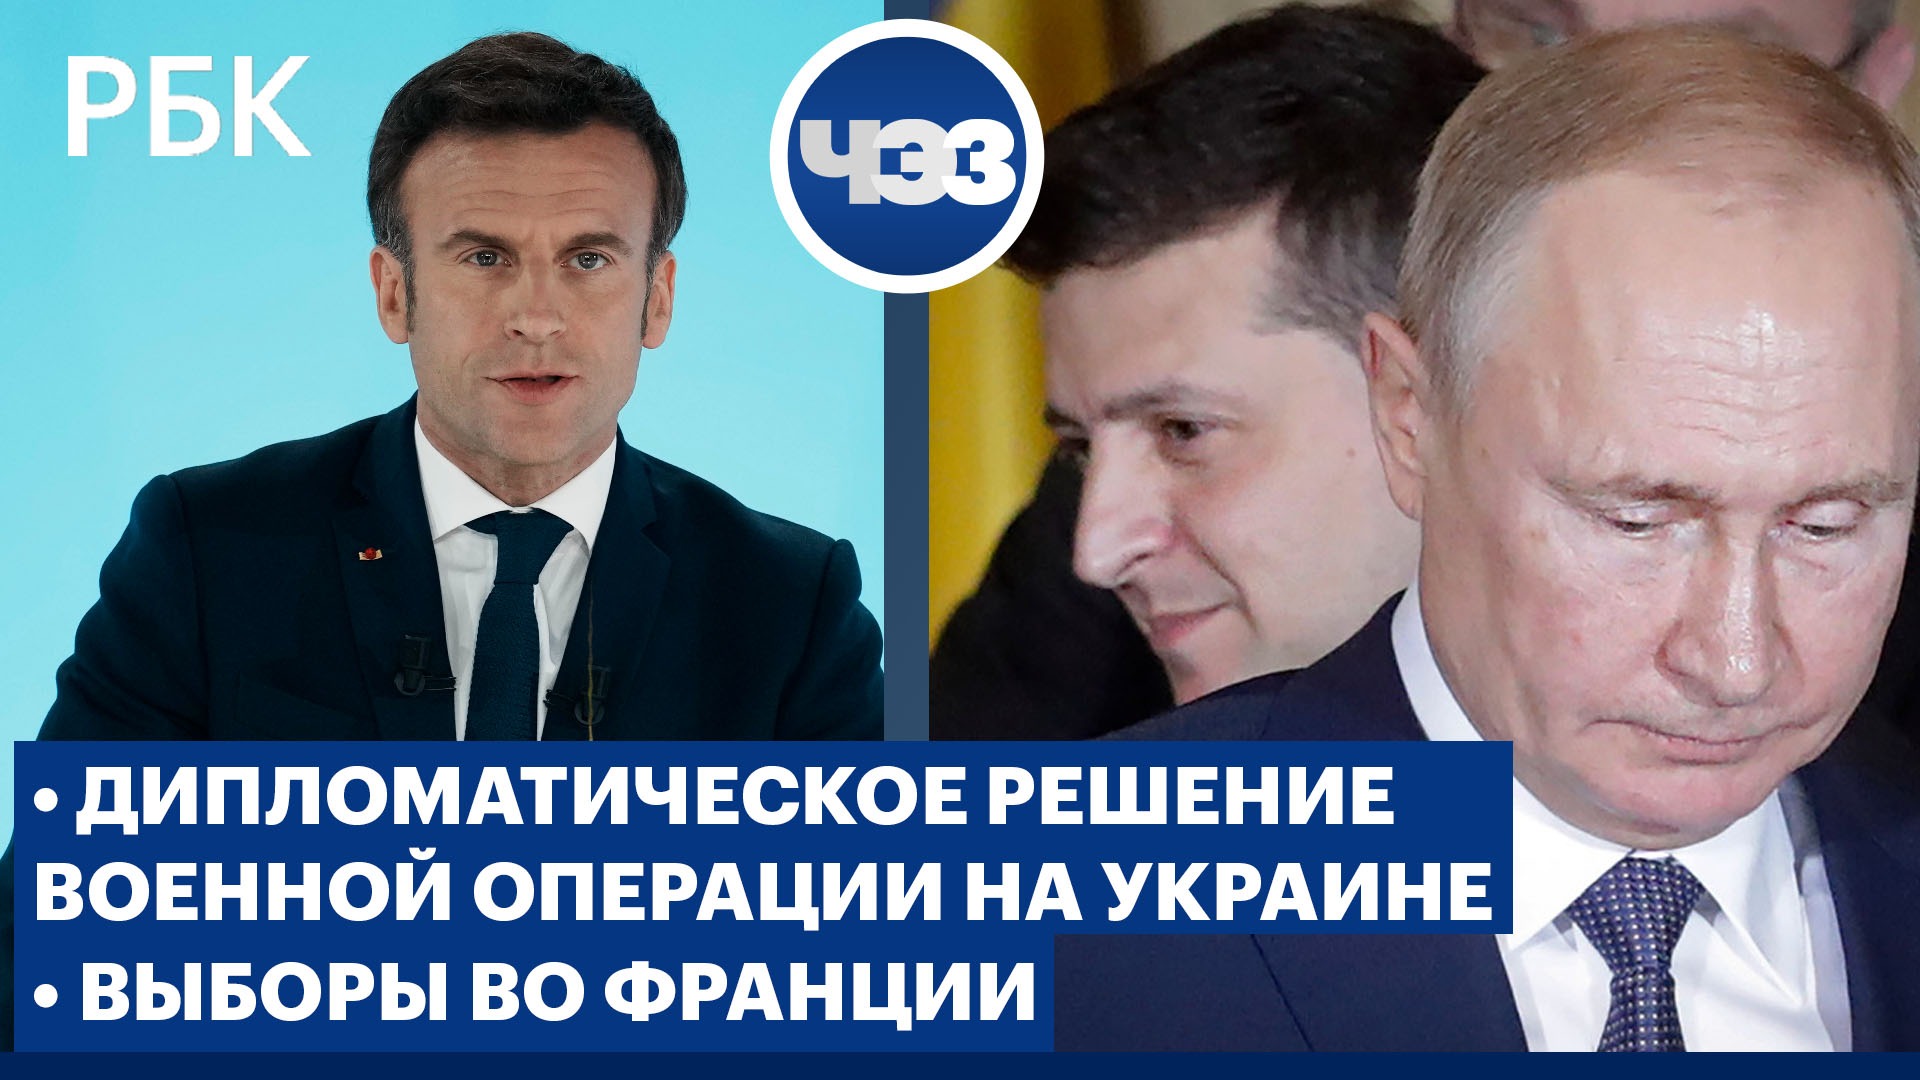 Военная операция на Украине: шансы на дипломатическое урегулирование. Выборы во Франции